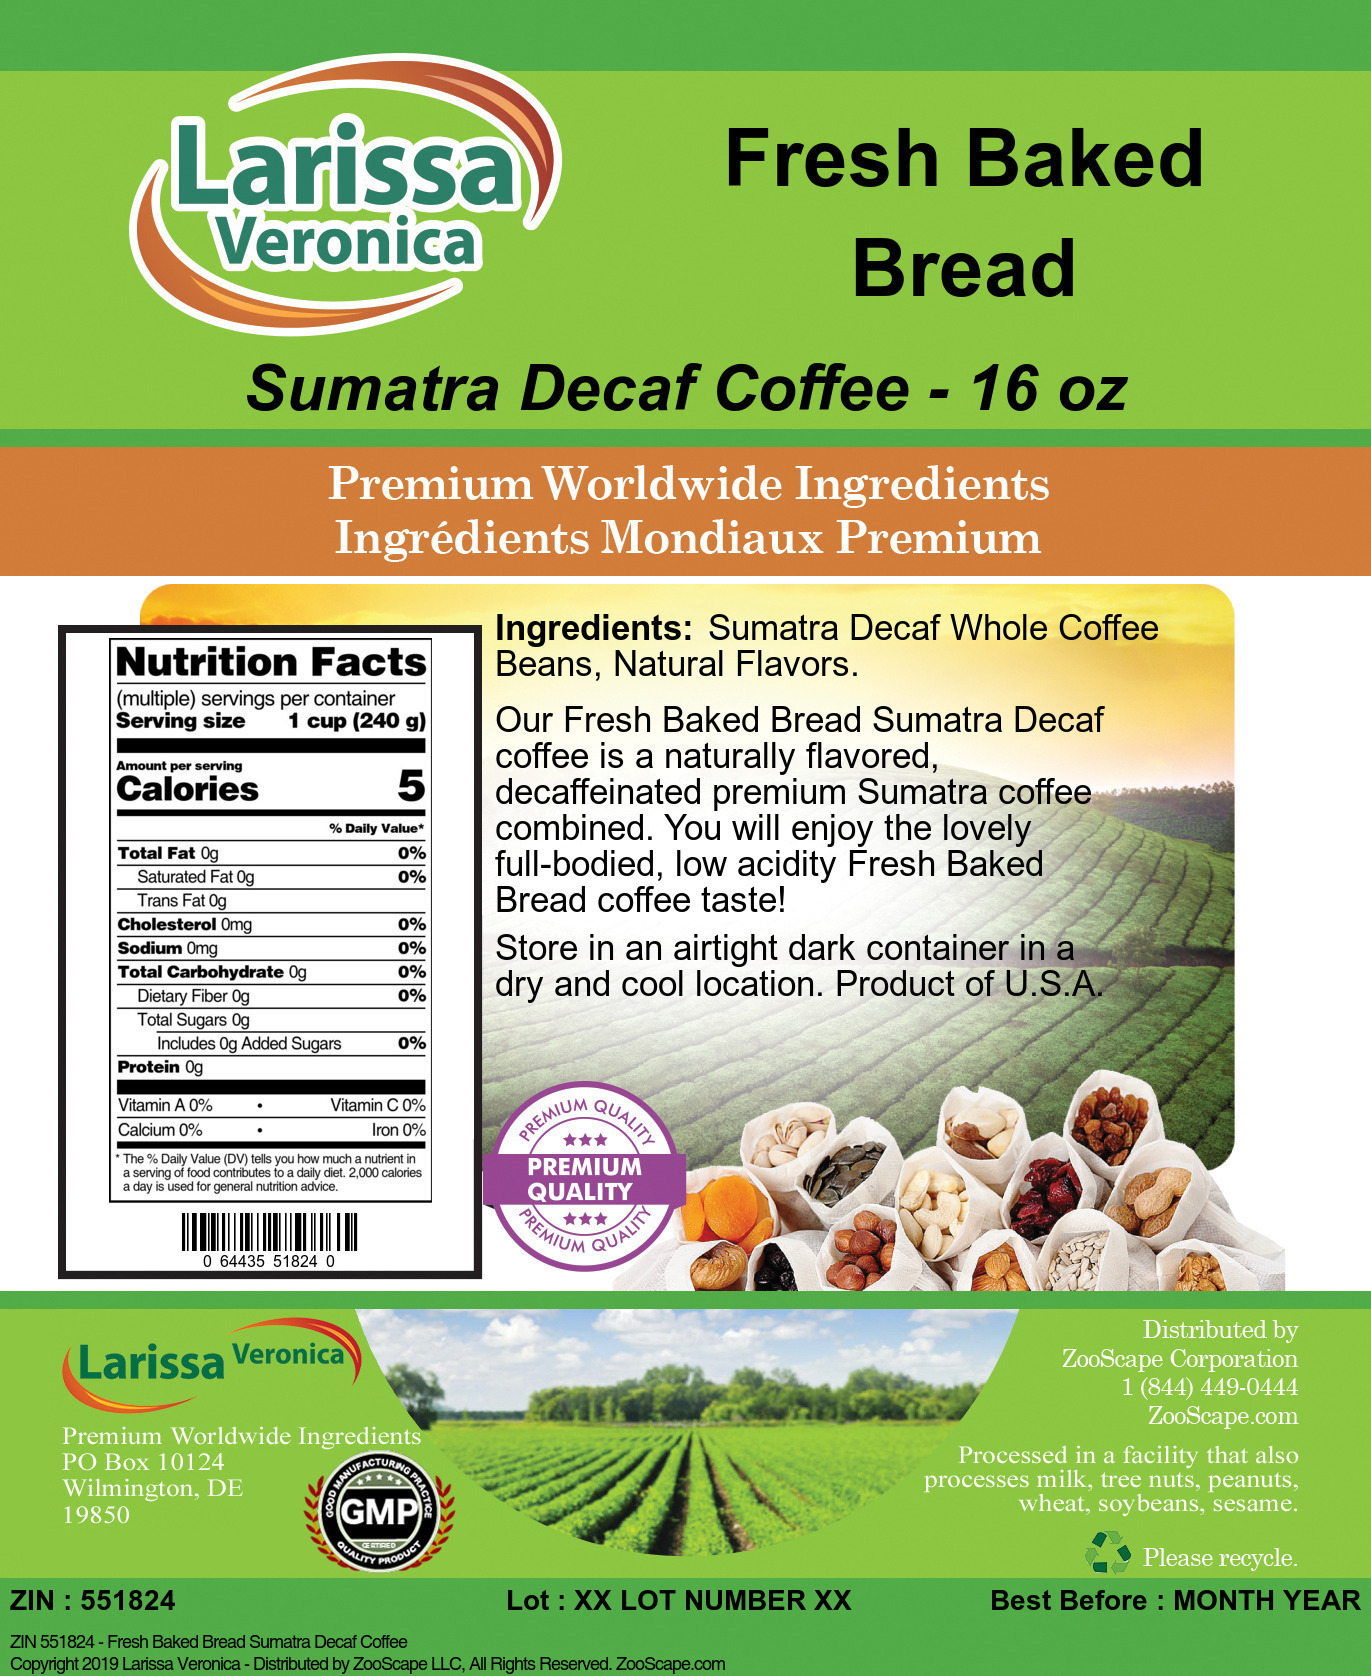 Fresh Baked Bread Sumatra Decaf Coffee - Label